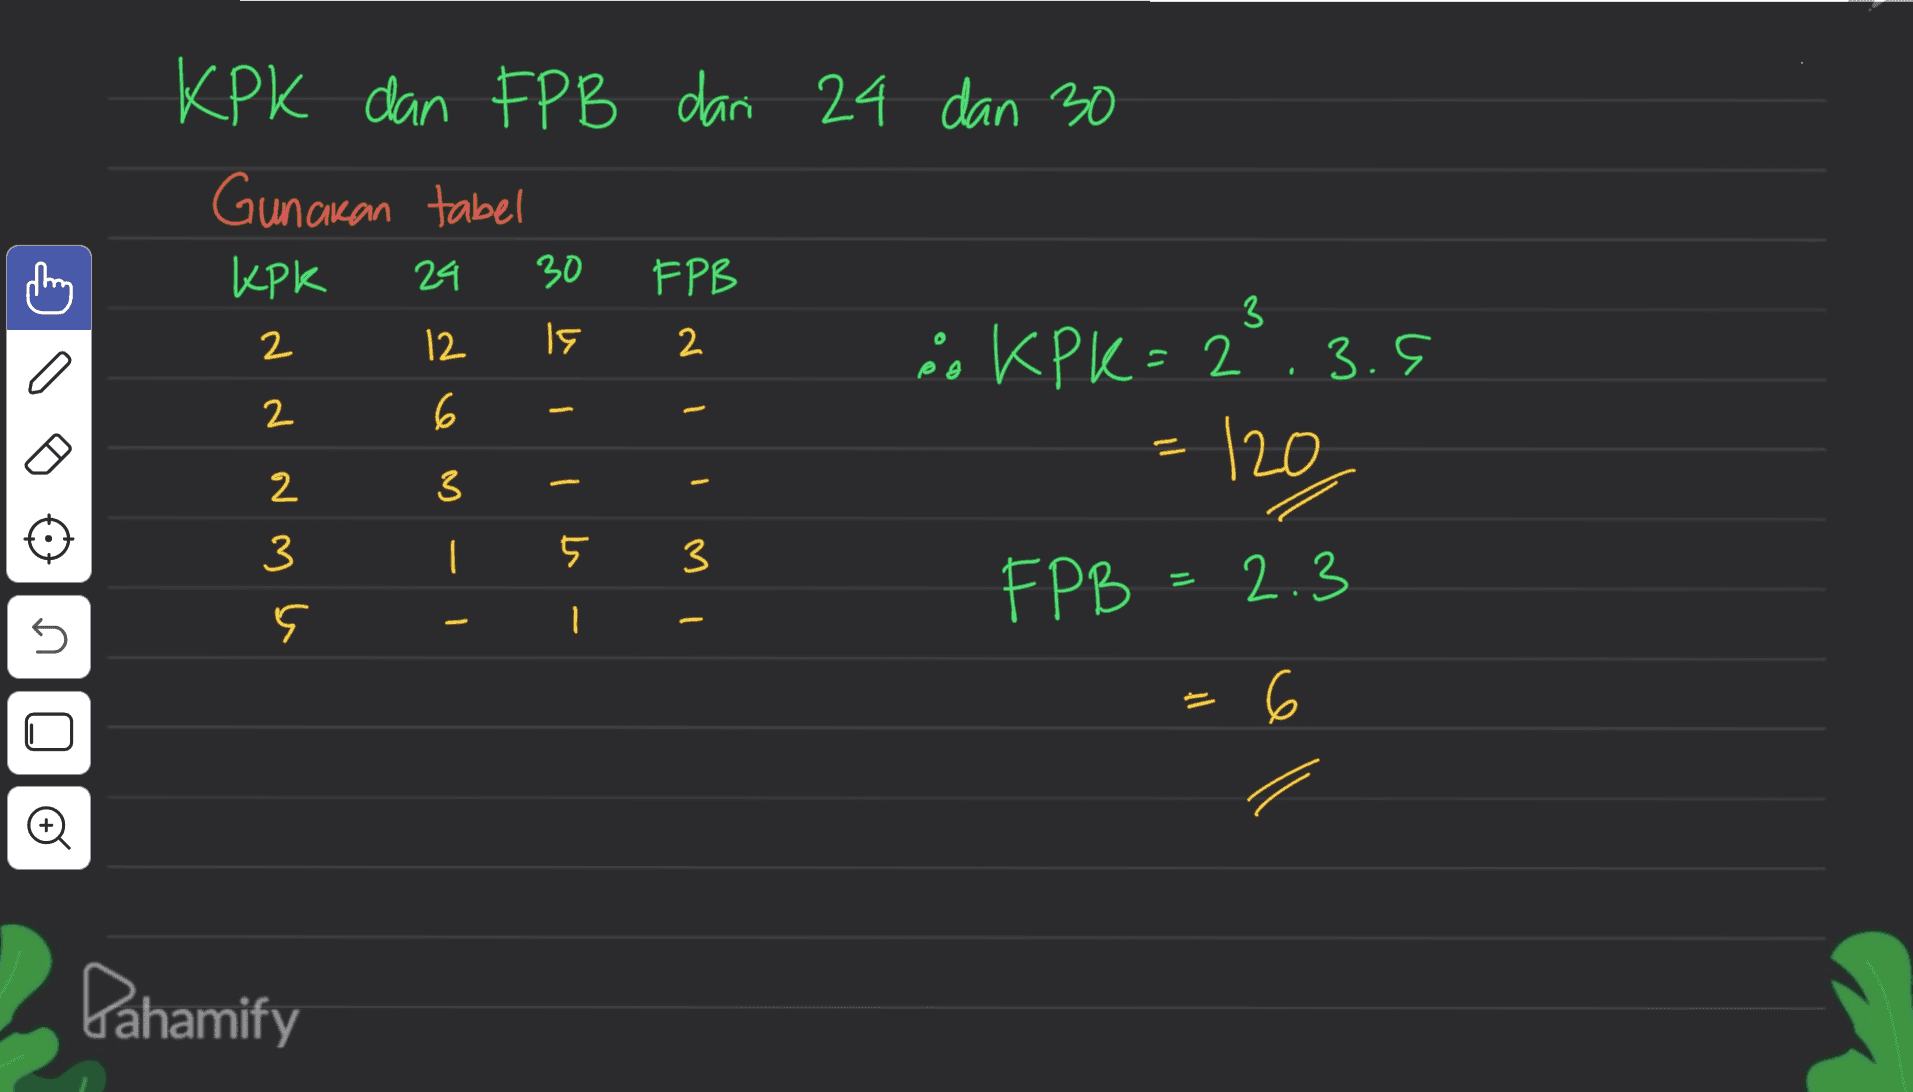 KPK dan FPB dari 24 dan 30 Gunakan tabel KPK FPB " KPK=2 3.5 120 24 30 3 12 IS 2 2 6 o 3 N N N mu - o | 1 1 3 5 3 FPB 2.3 - 1 s 6 Pahamify 